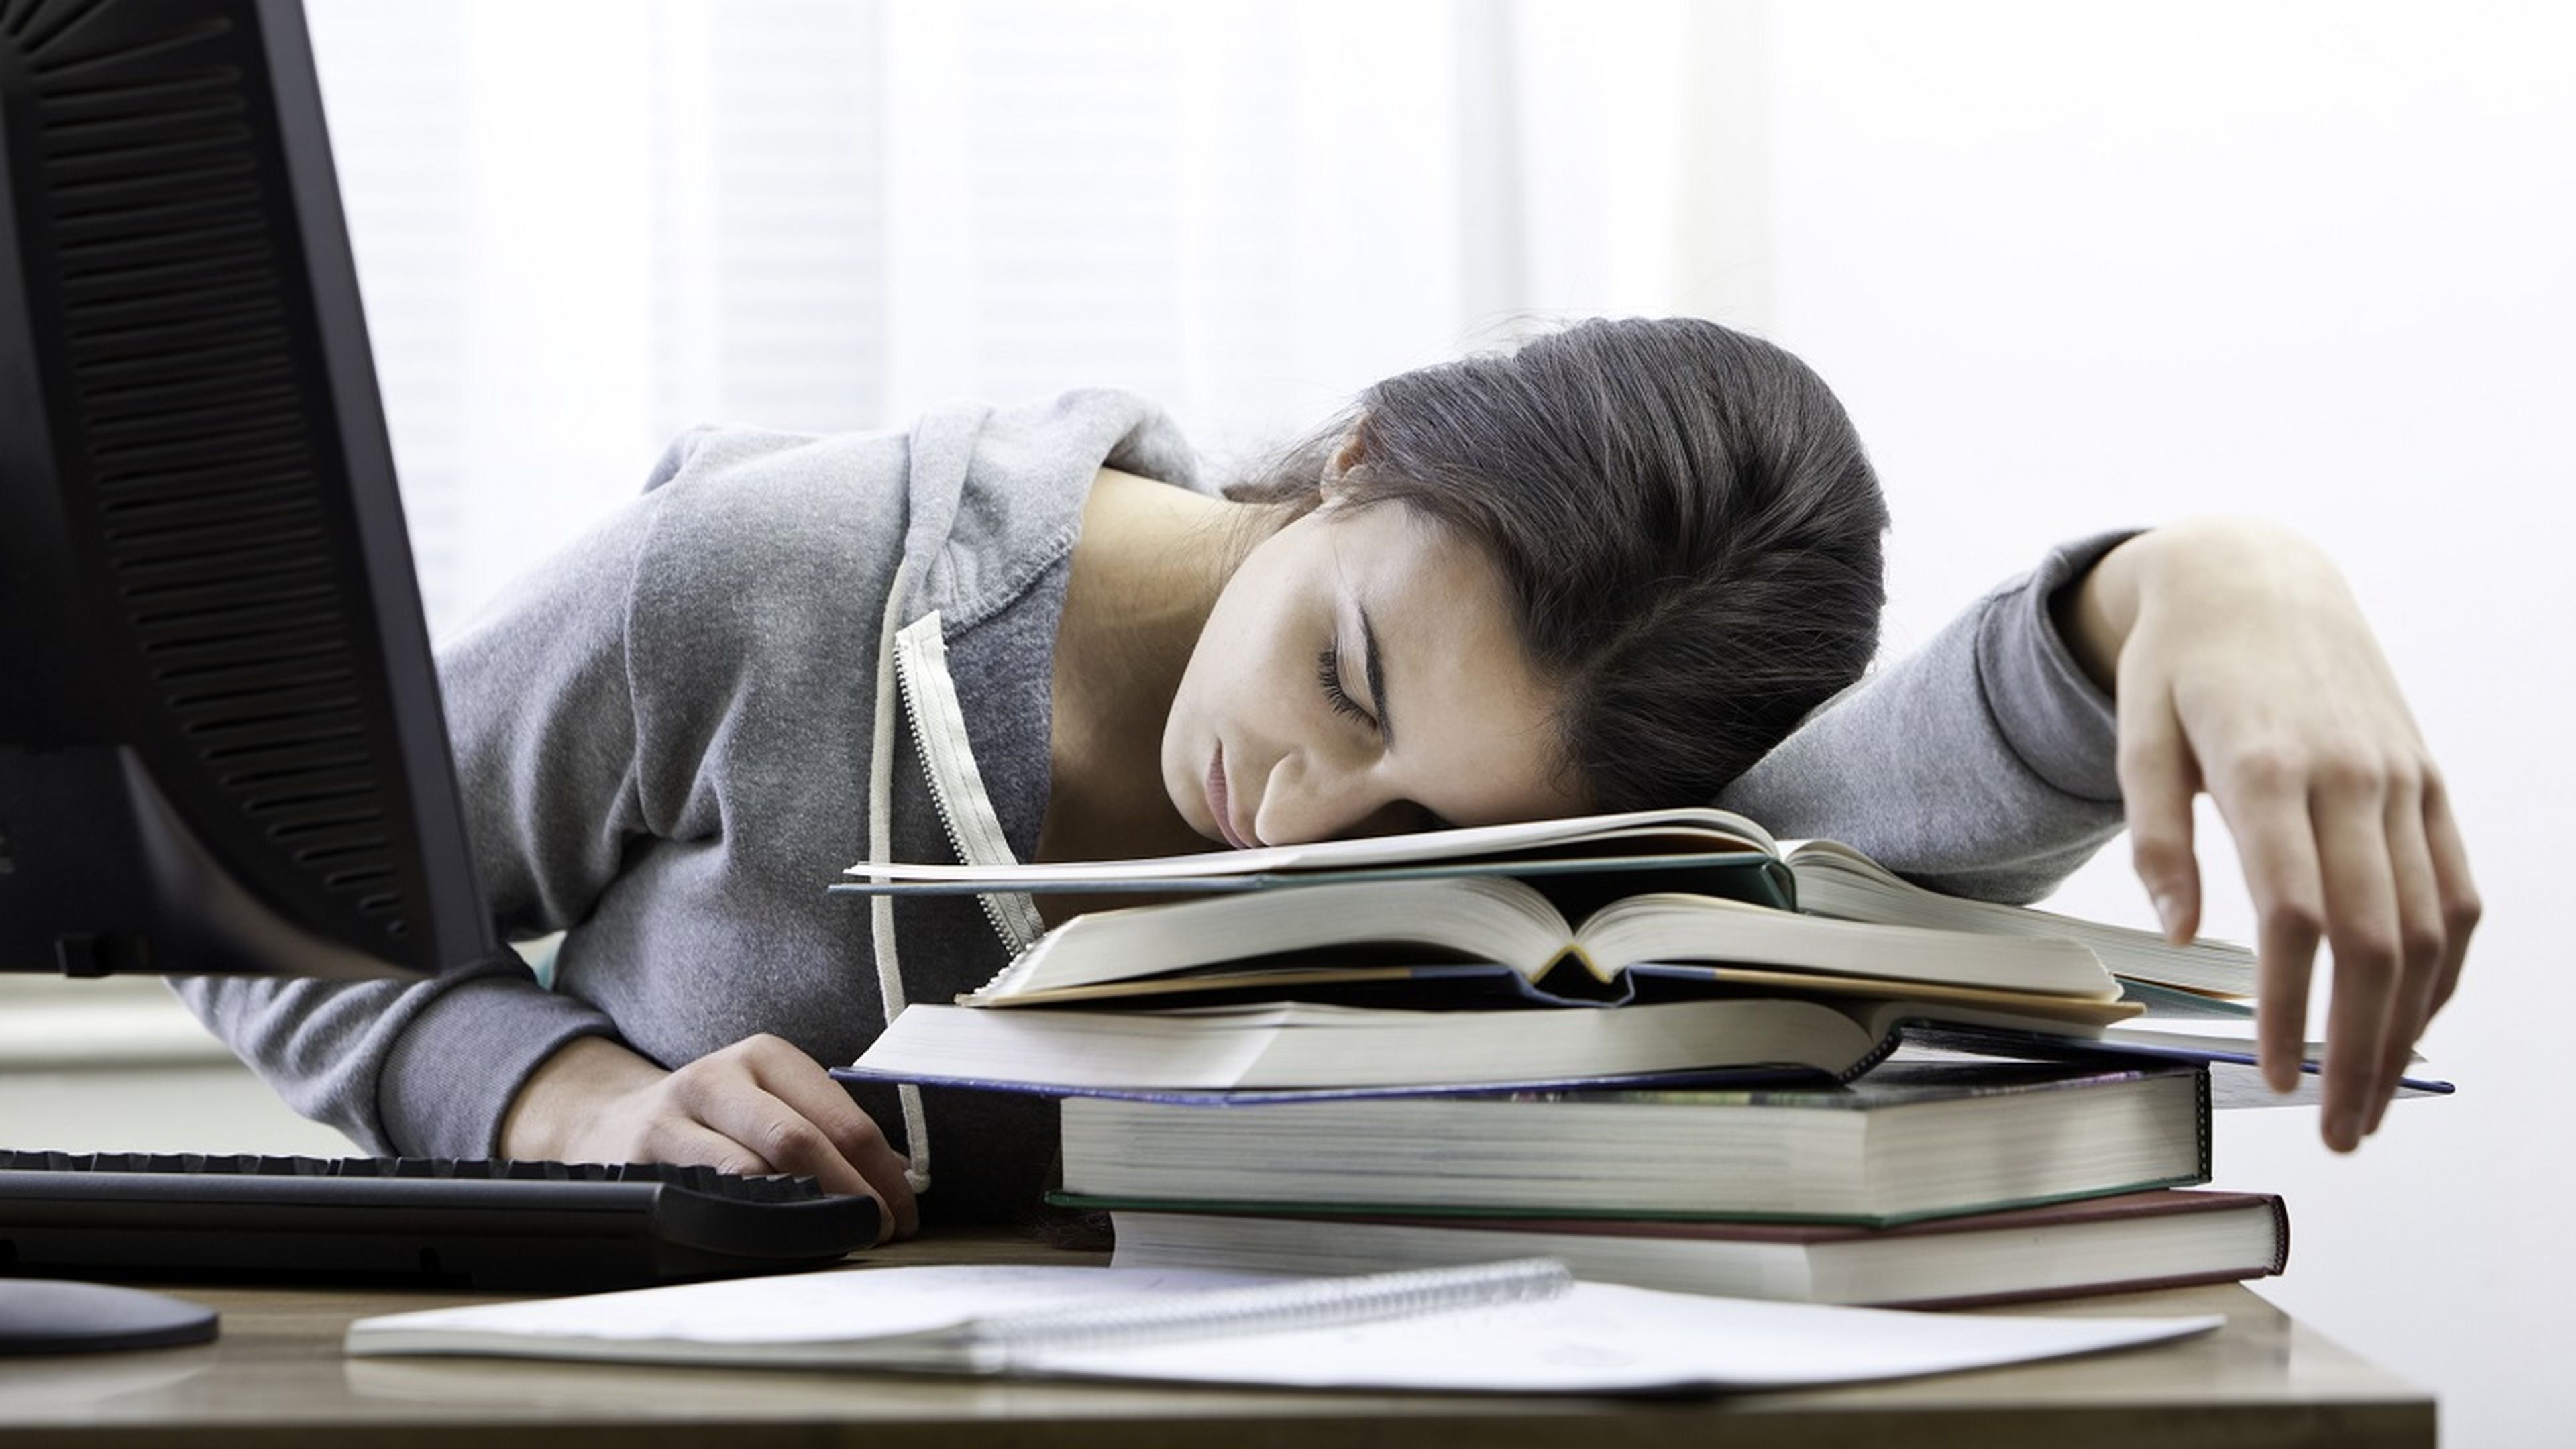 Dormir bien y estudiar menos: así explica la ciencia cómo potenciar la memoria